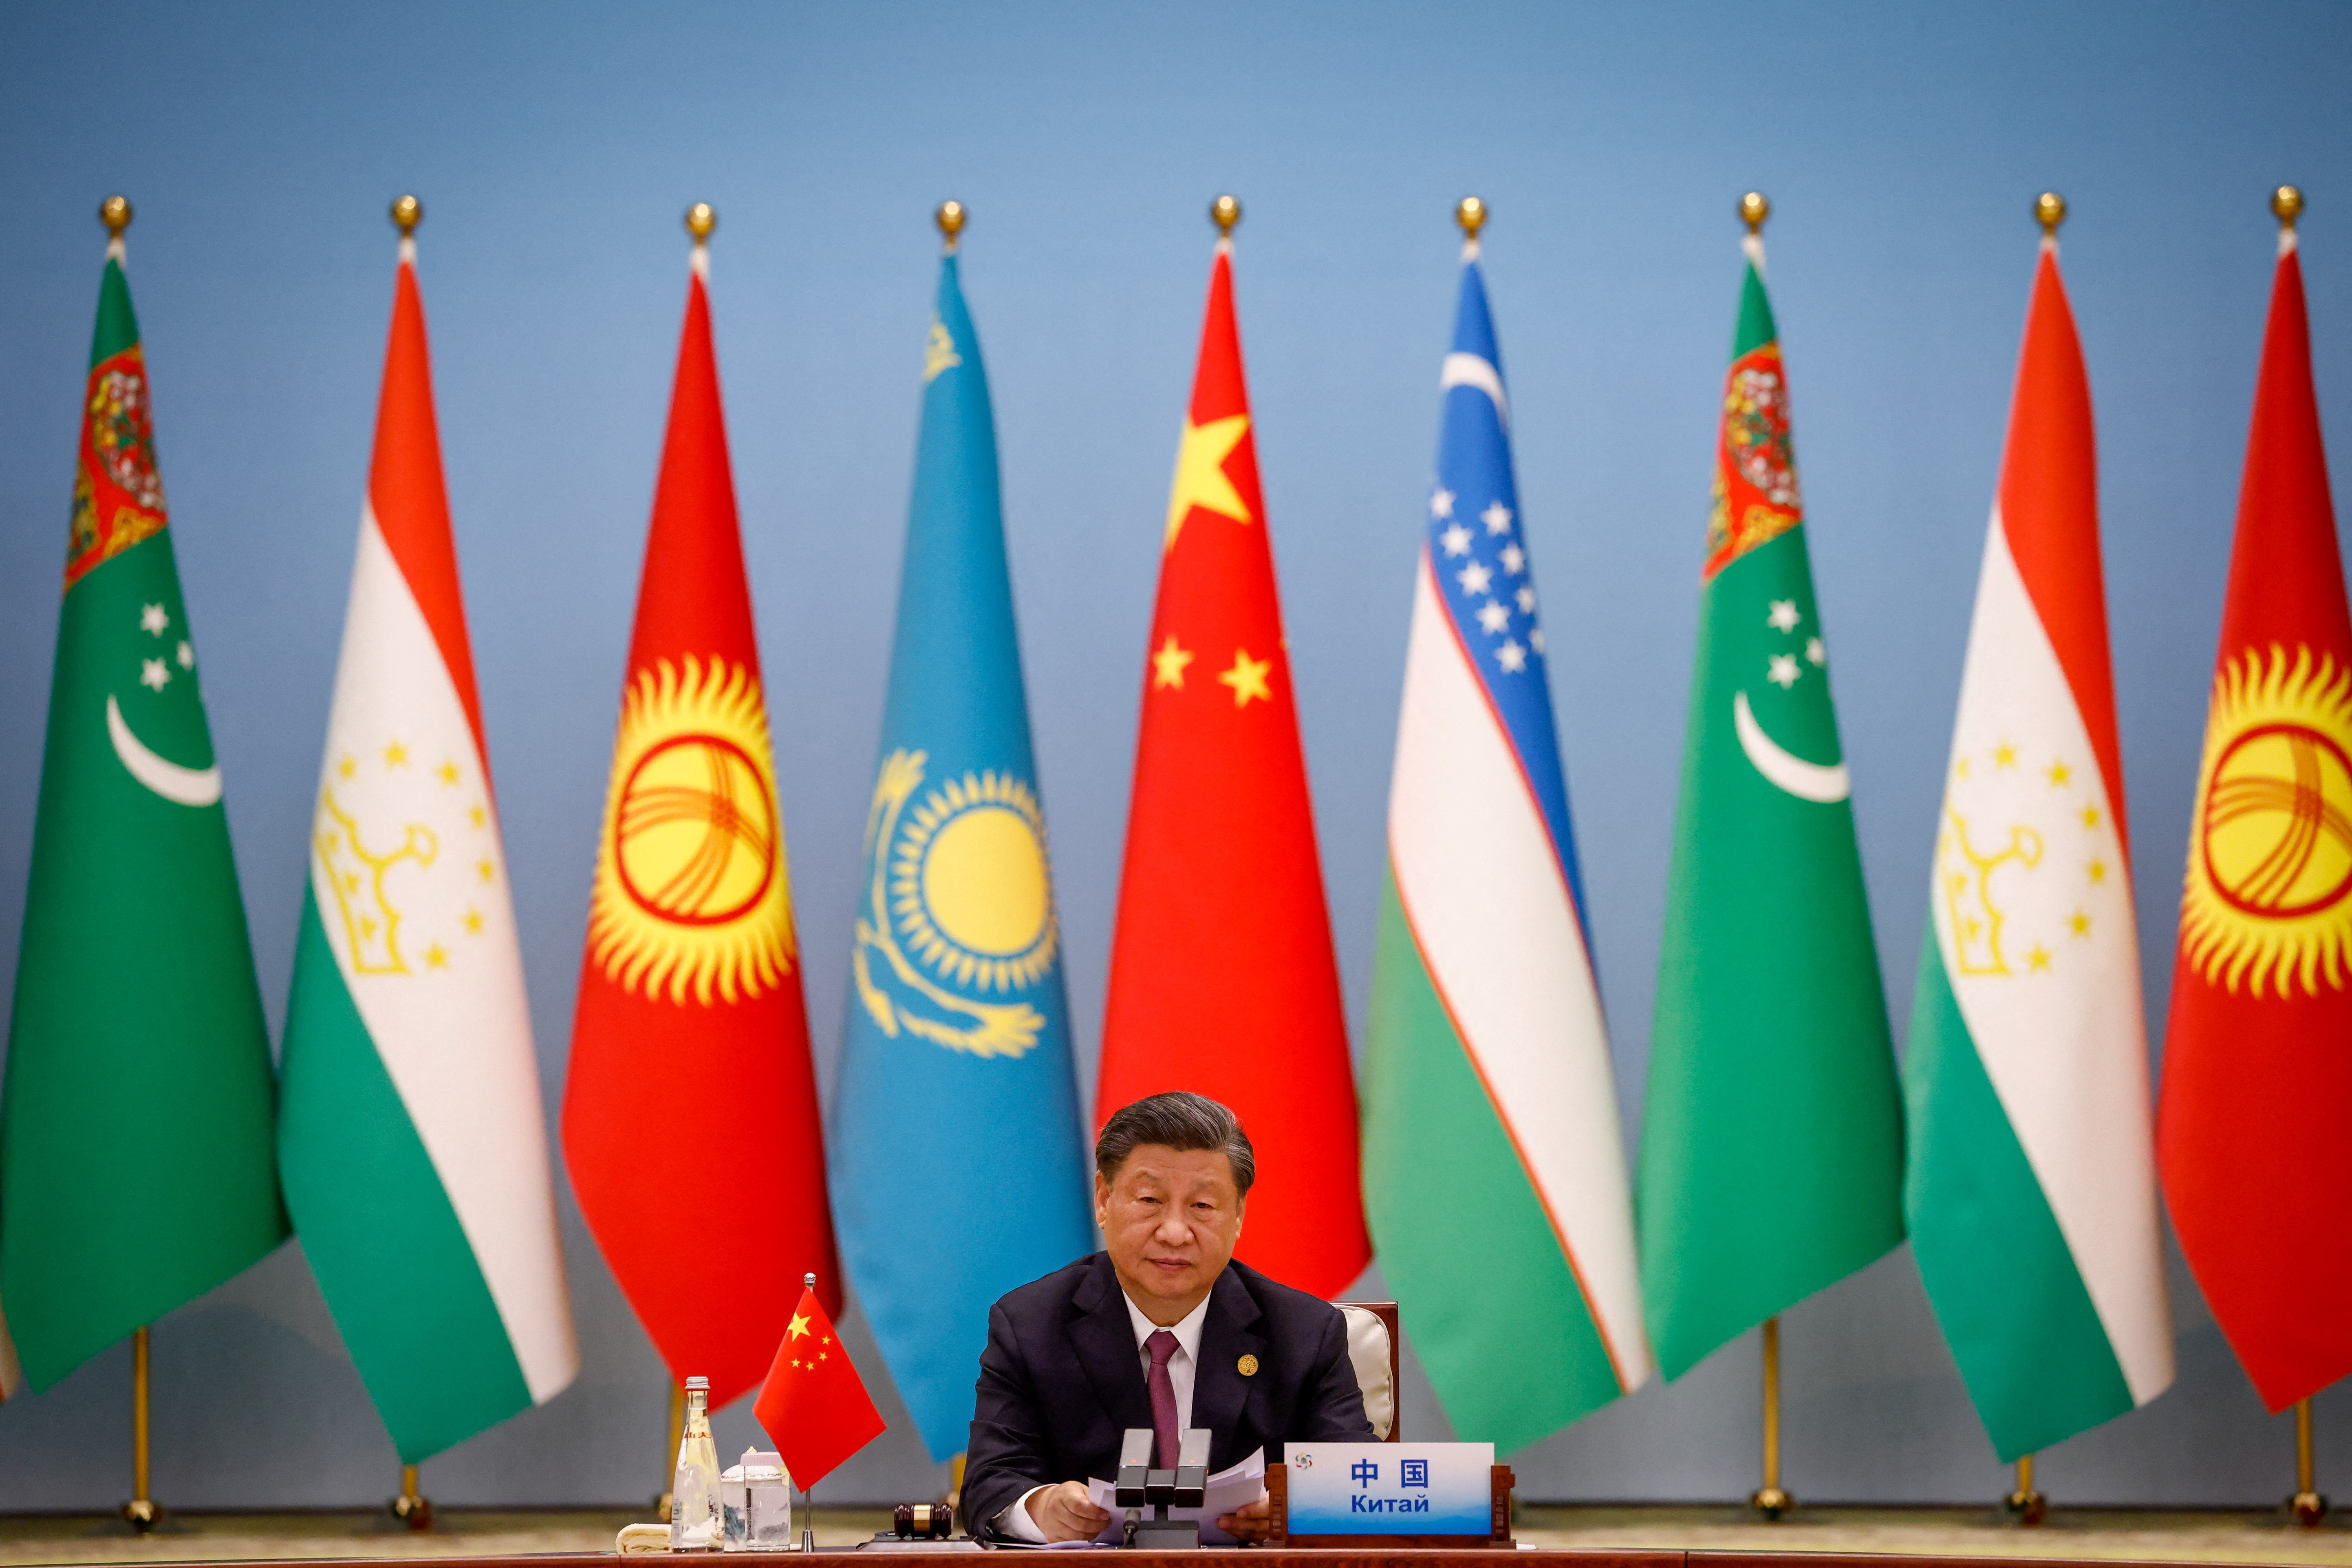 Ο Κινέζος πρόεδρος αποκαλύπτει το μεγάλο αναπτυξιακό σχέδιο για την Κεντρική Ασία